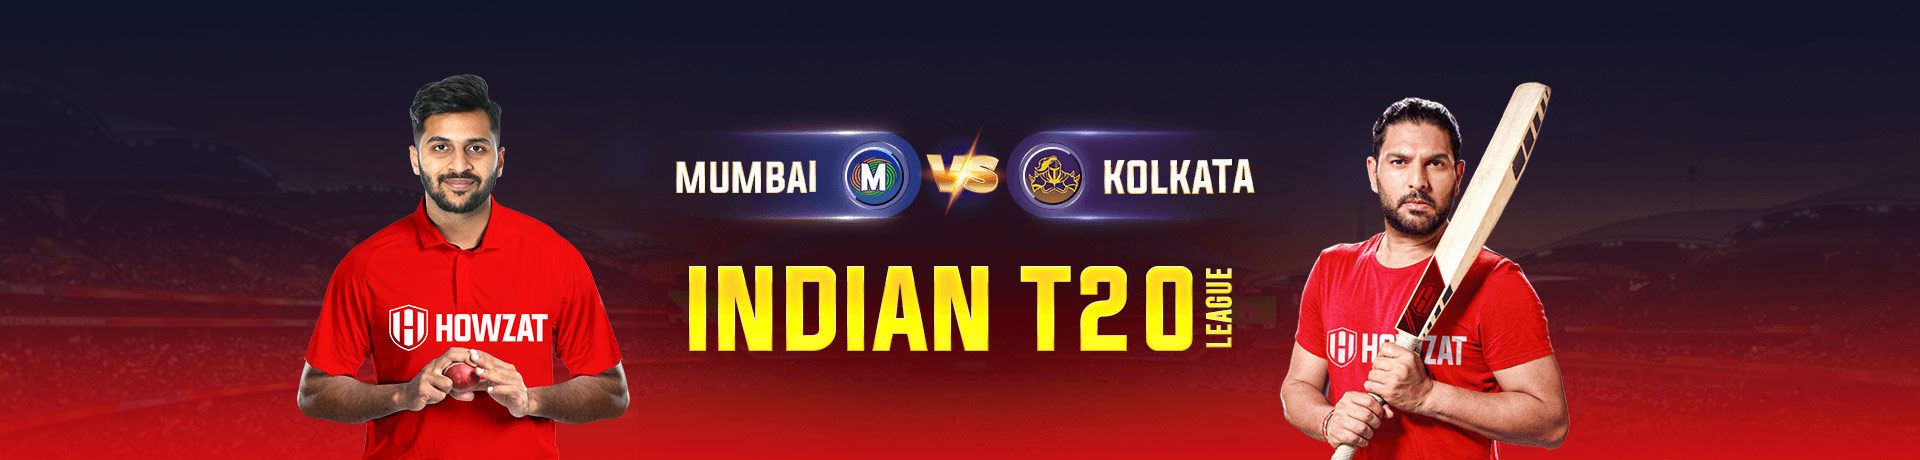 Mumbai vs Kolkata Indian T20 League